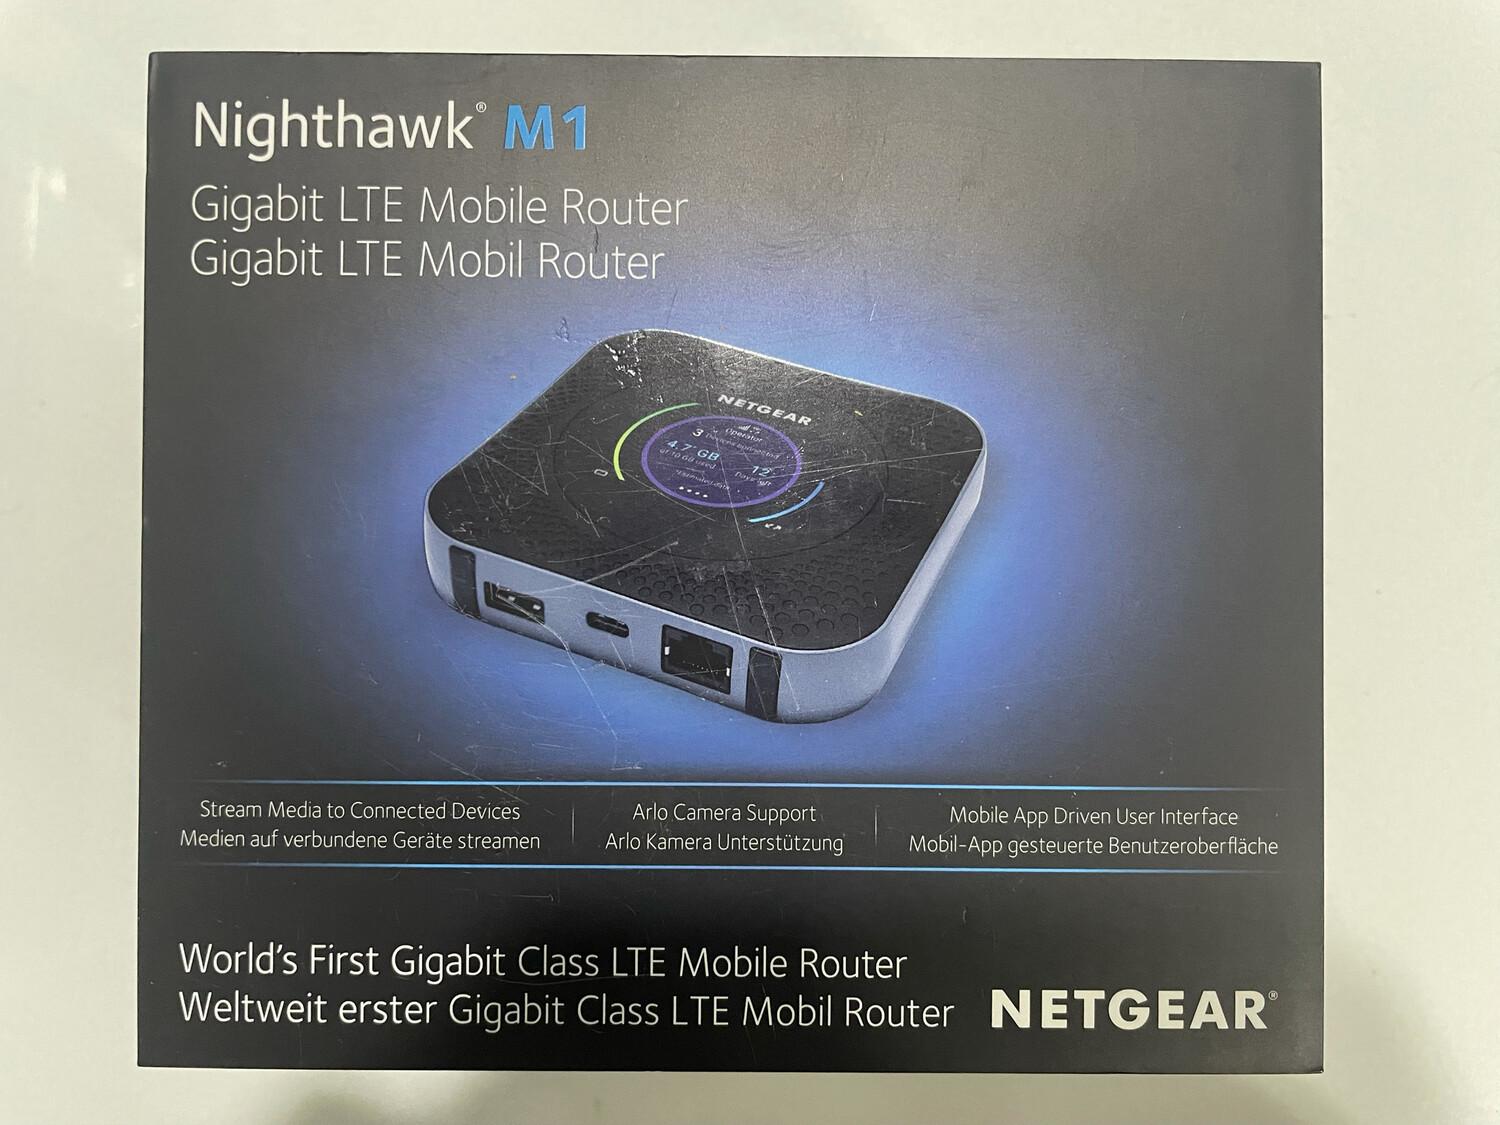 Box 4G NETGEAR MR1100 Nighthawk 4G LTE Cat16